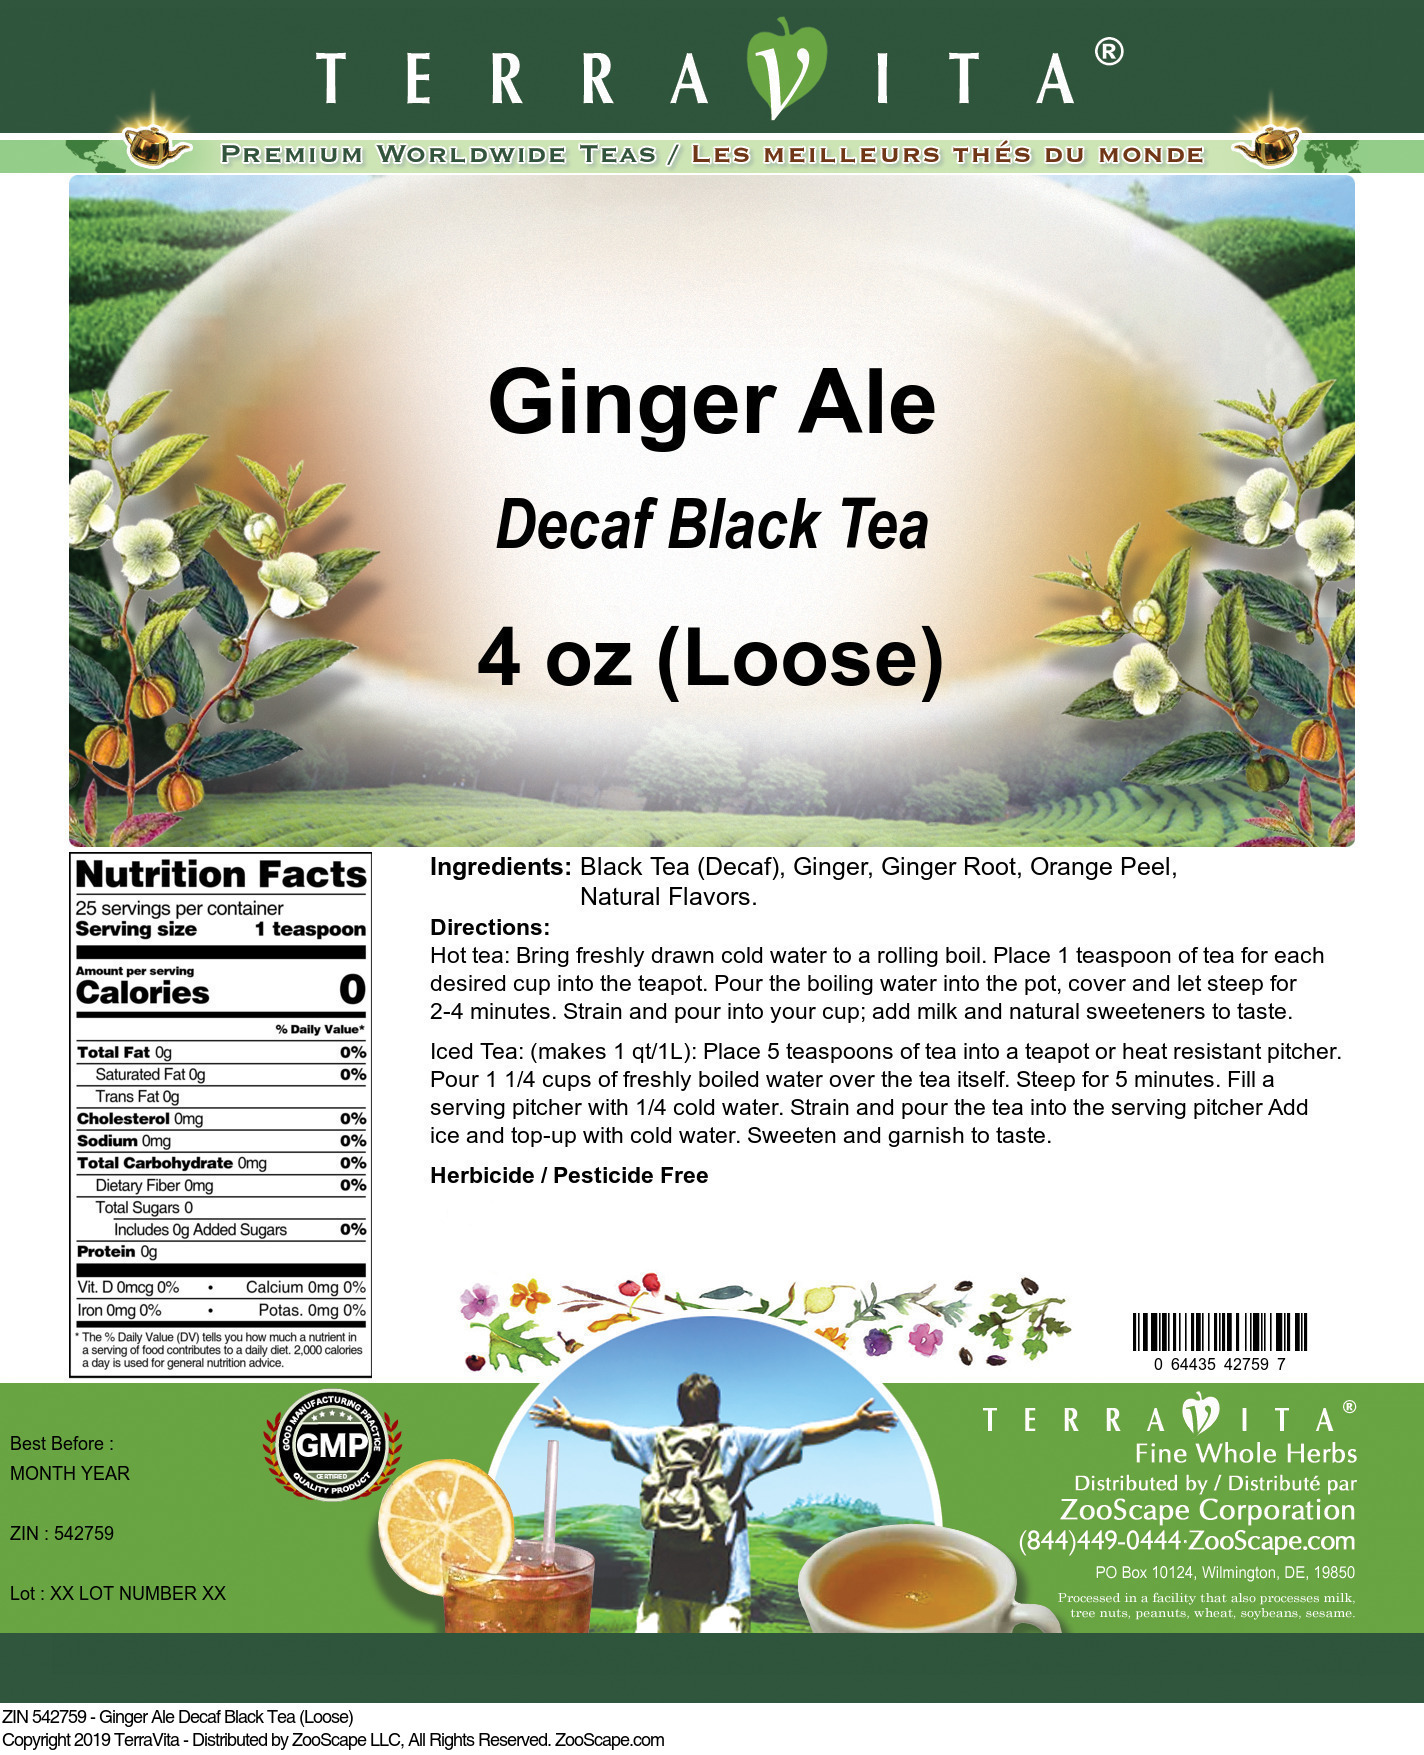 Ginger Ale Decaf Black Tea (Loose) - Label